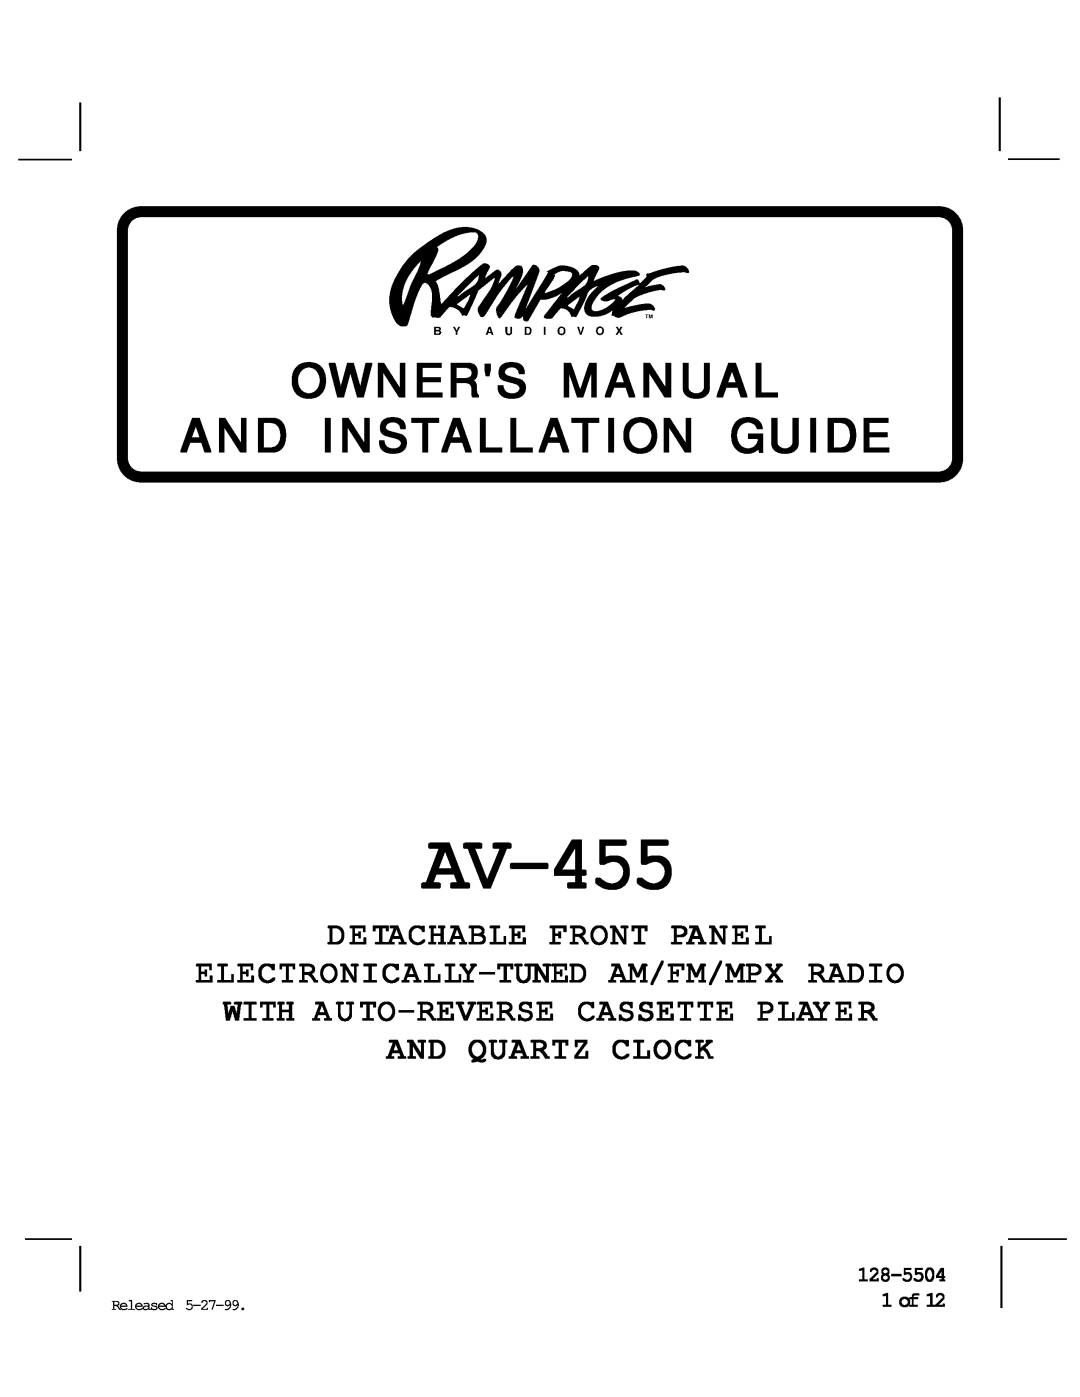 Audiovox AV-455 manual 128-5504 1 of, Detachable Front Panel 